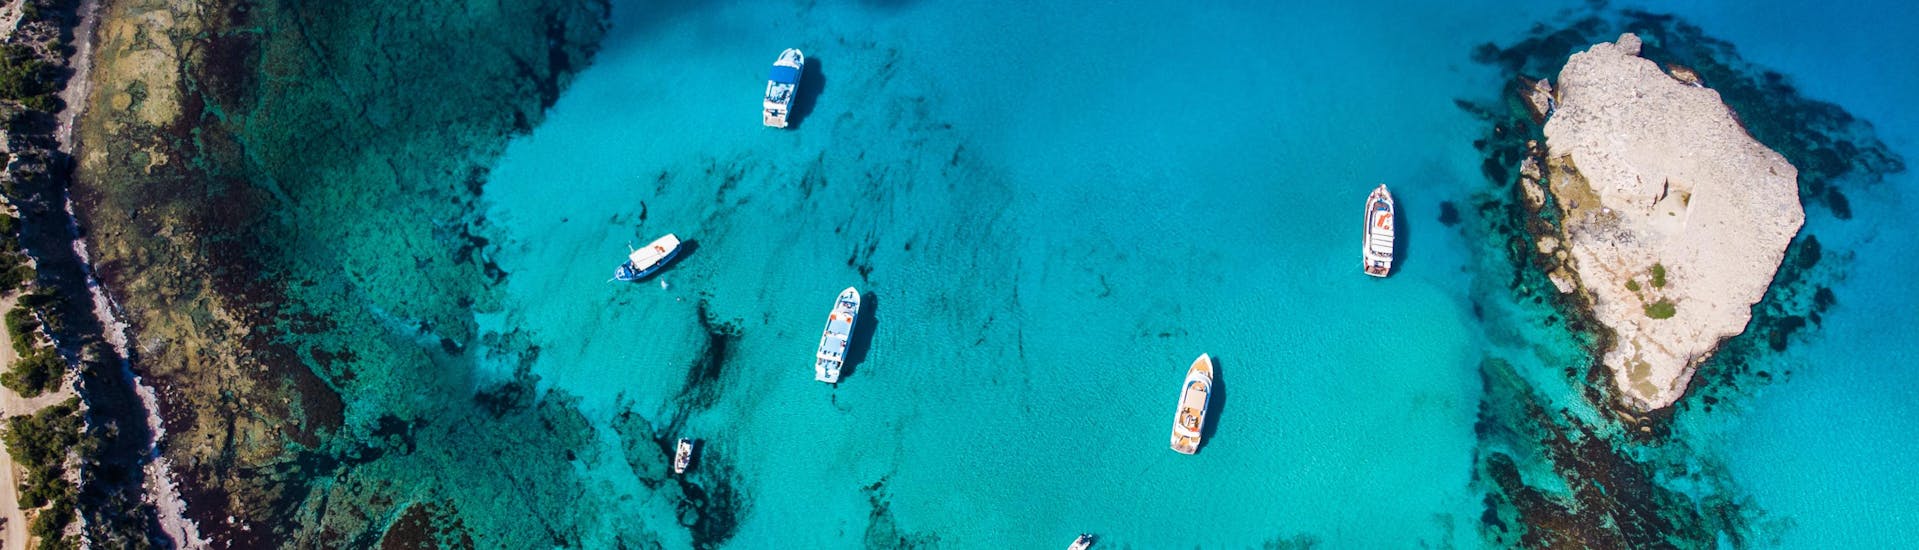 Luchtfoto van de blauwe lagune, een populaire bestemming van boottochten vanuit Latchi.